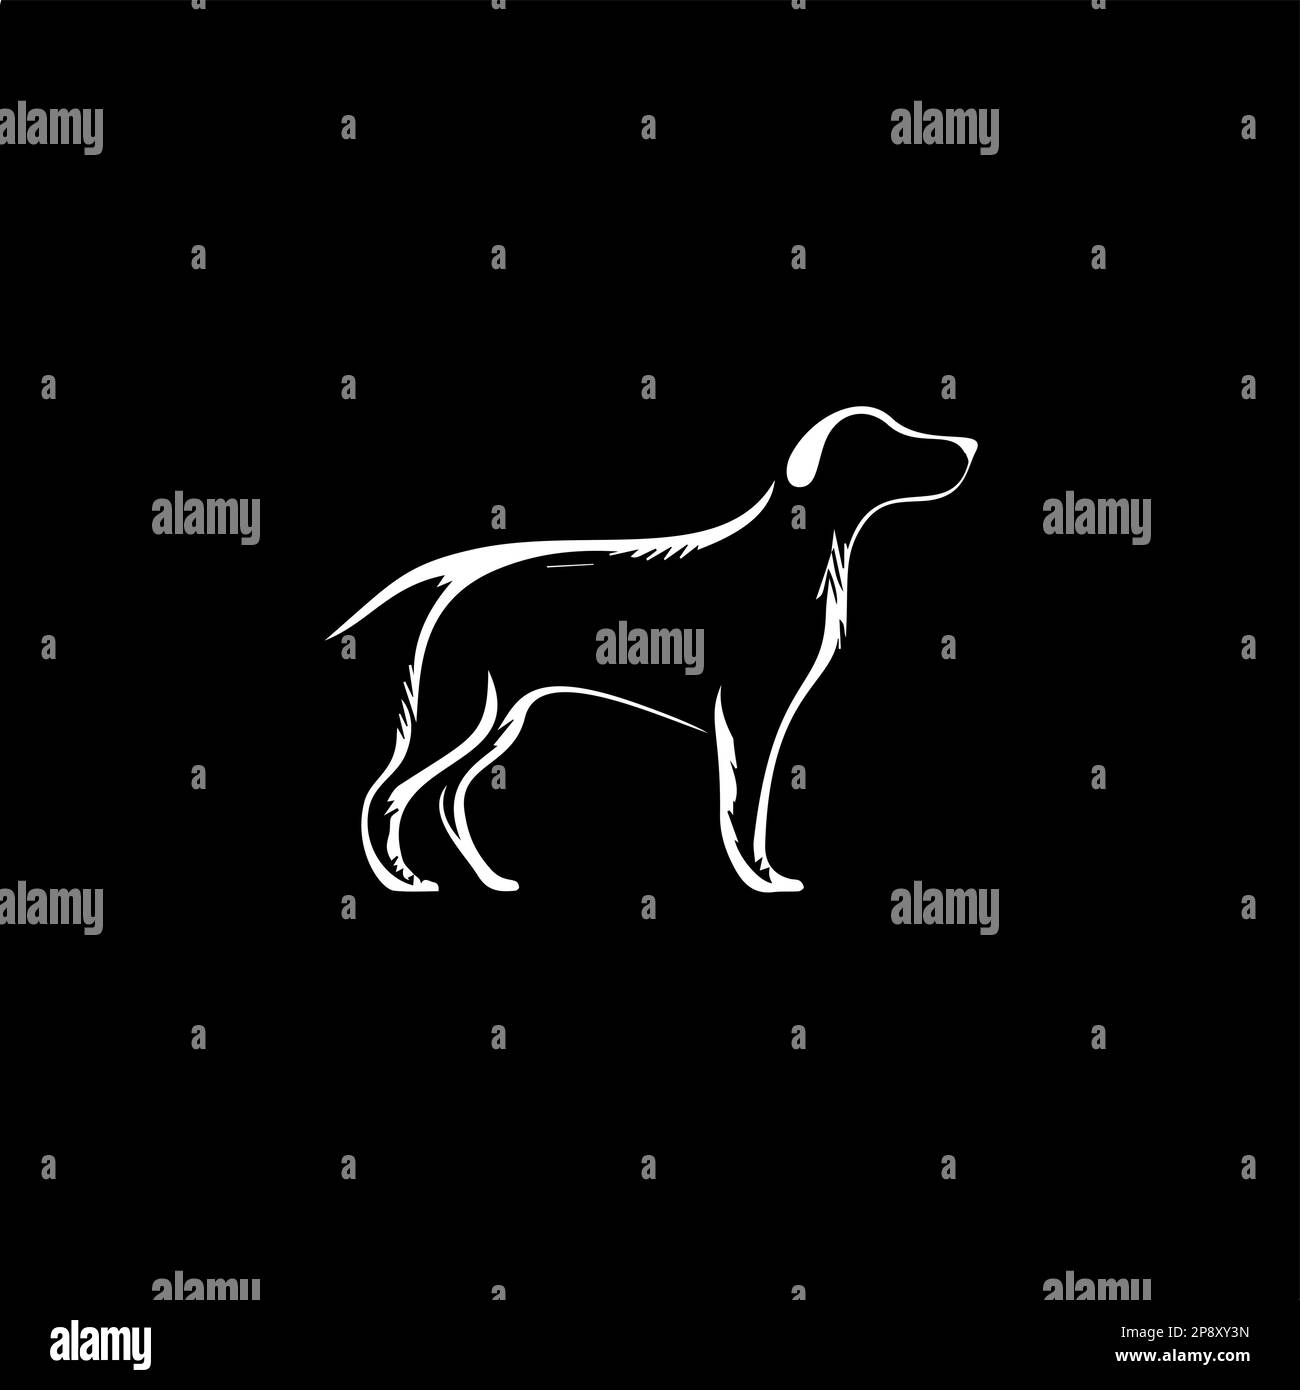 Modèle de logo minimaliste, icône blanche de silhouette de chien sur fond noir, concept de logotype moderne pour l'identité d'entreprise, imprimé t-shirts, tatouage Illustration de Vecteur